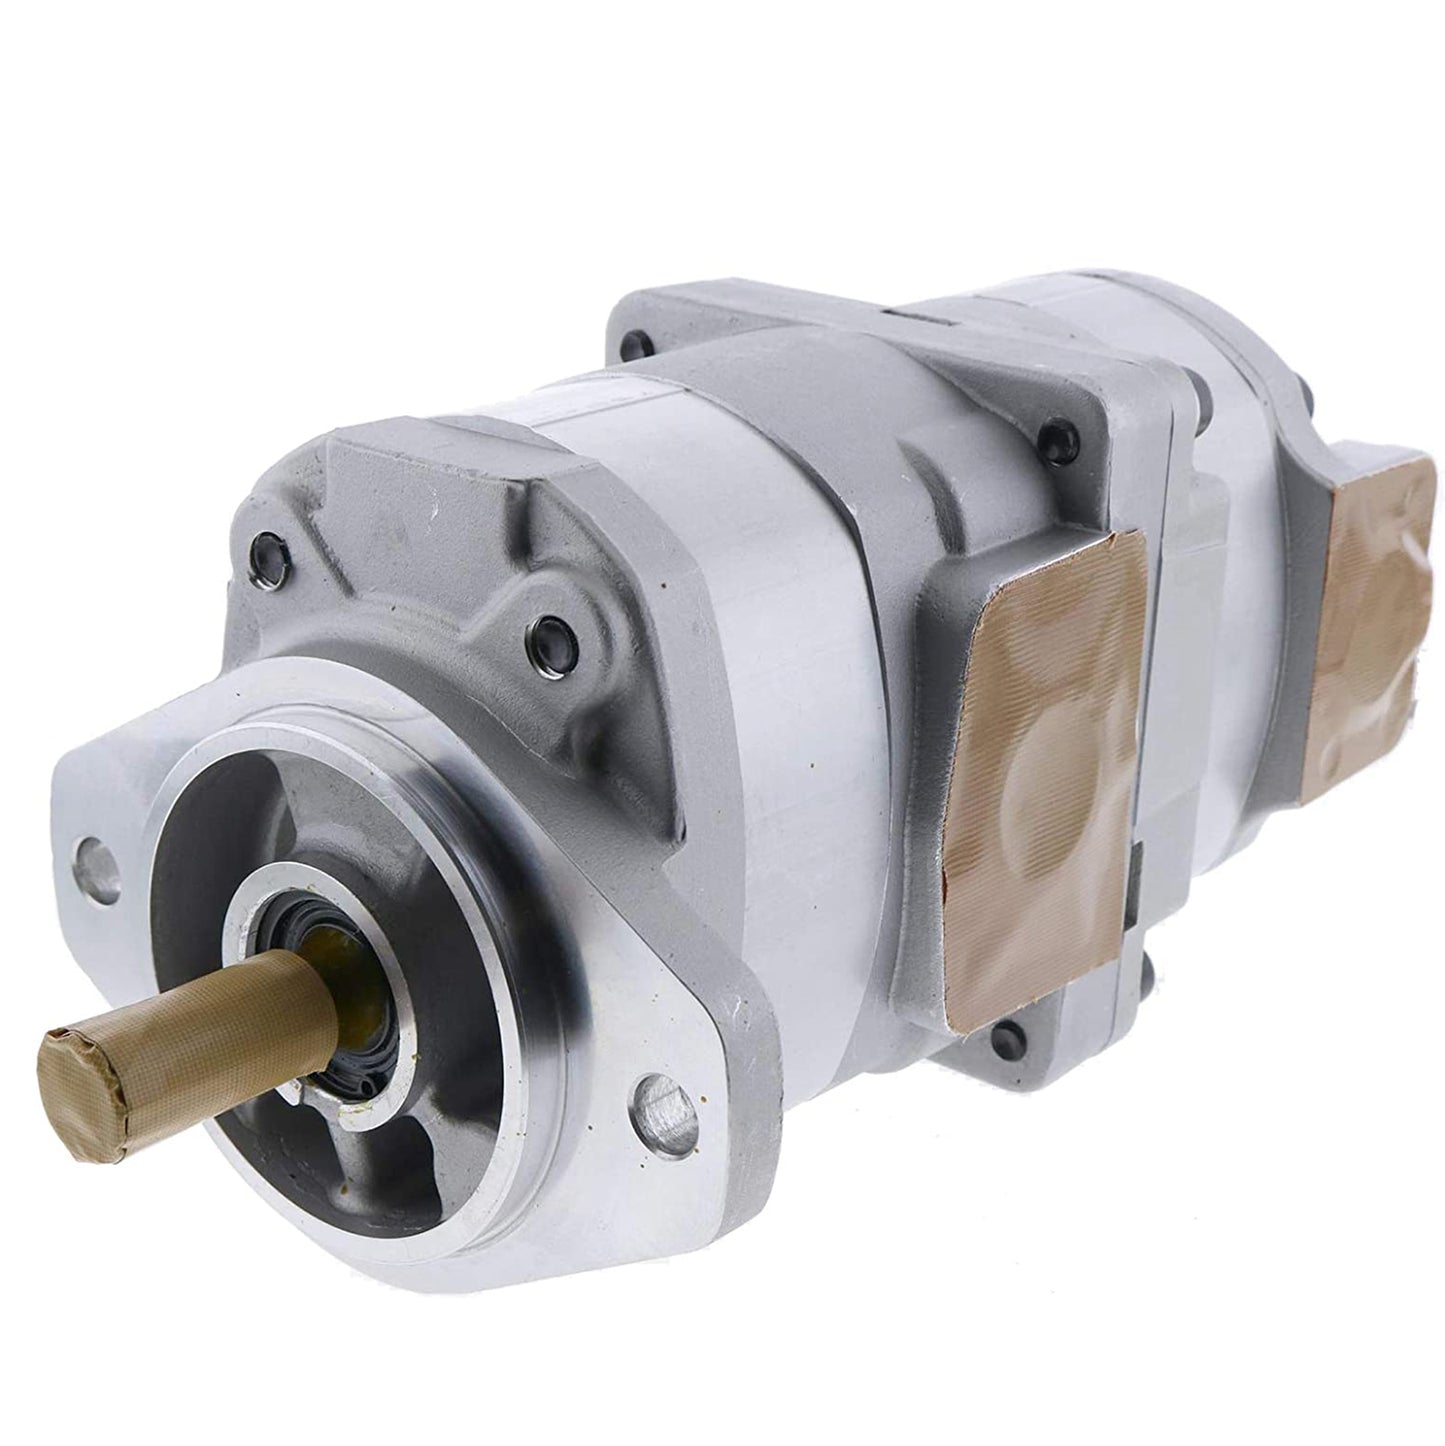 705-52-21070 Hydraulic Pump Assy Compatible With Komatsu Bulldozer D41P-6 B20672